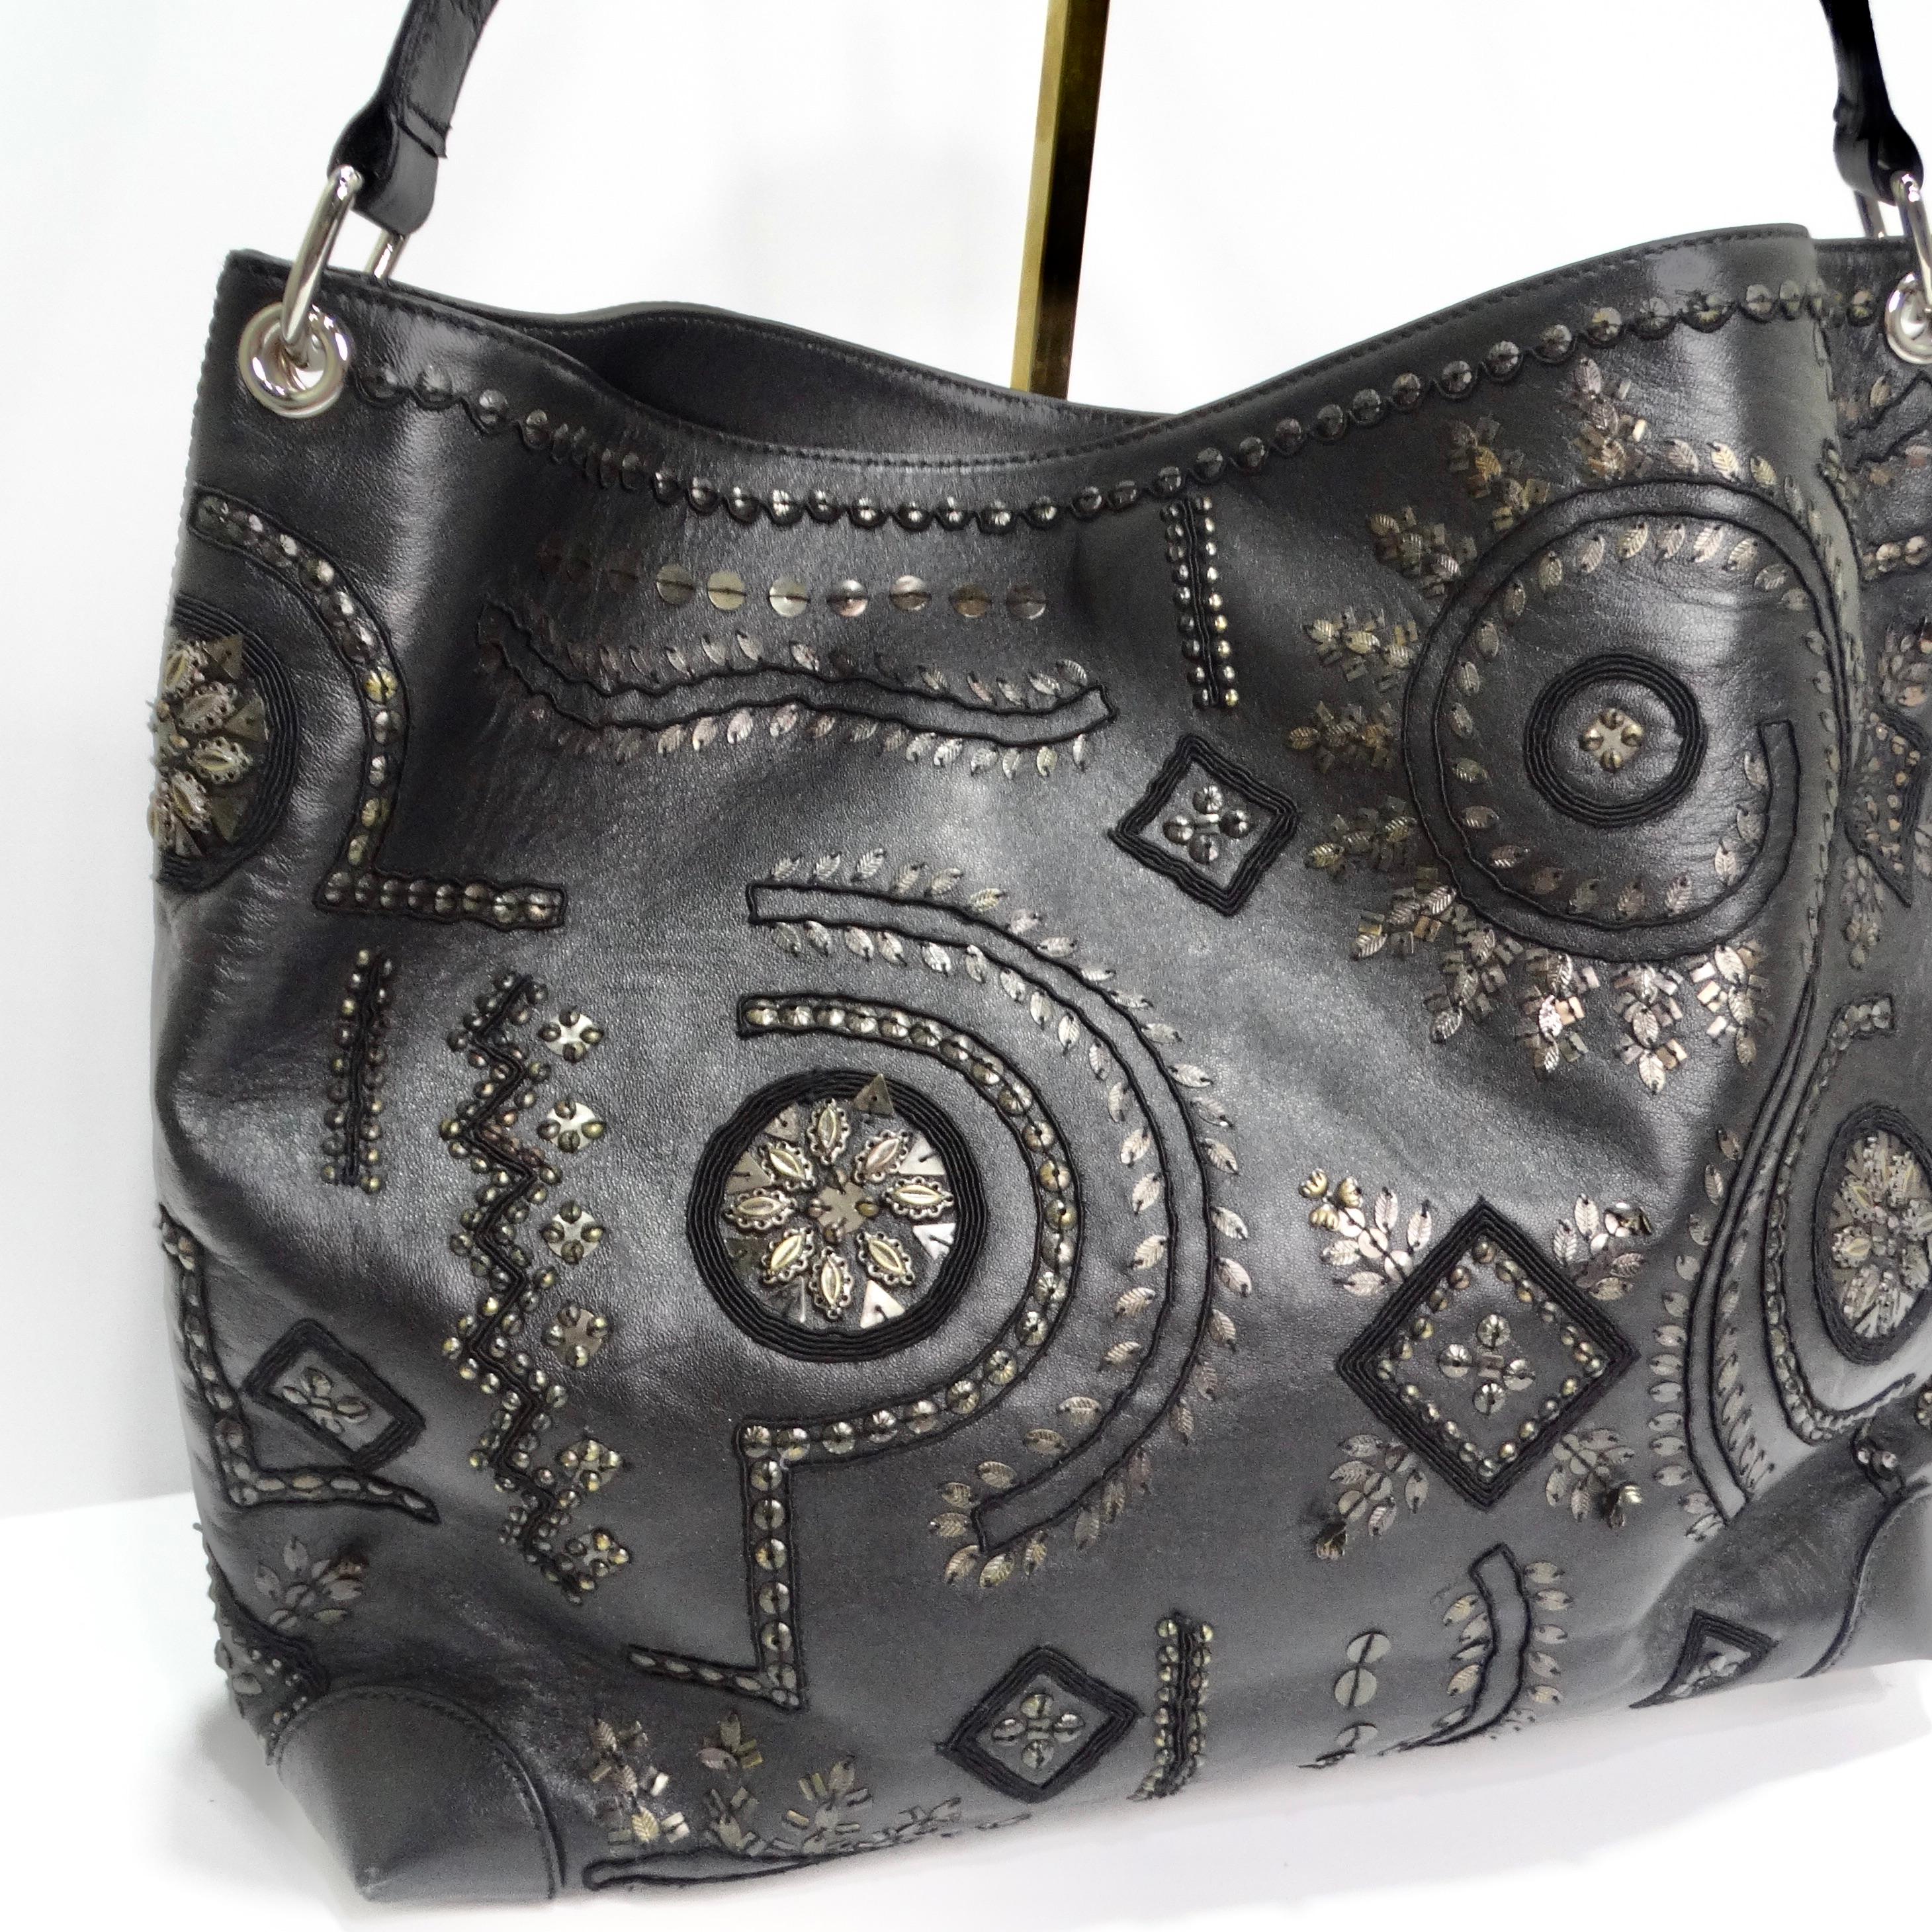 Mit der Oscar De La Renta Black Leather Embellished Tote Bag werten Sie Ihren Alltagsstil auf. Diese klassische schwarze Tasche ist ein wahres Kunstwerk, das mit seinen aufwendigen Stickereien und Perlenverzierungen Raffinesse und Launenhaftigkeit